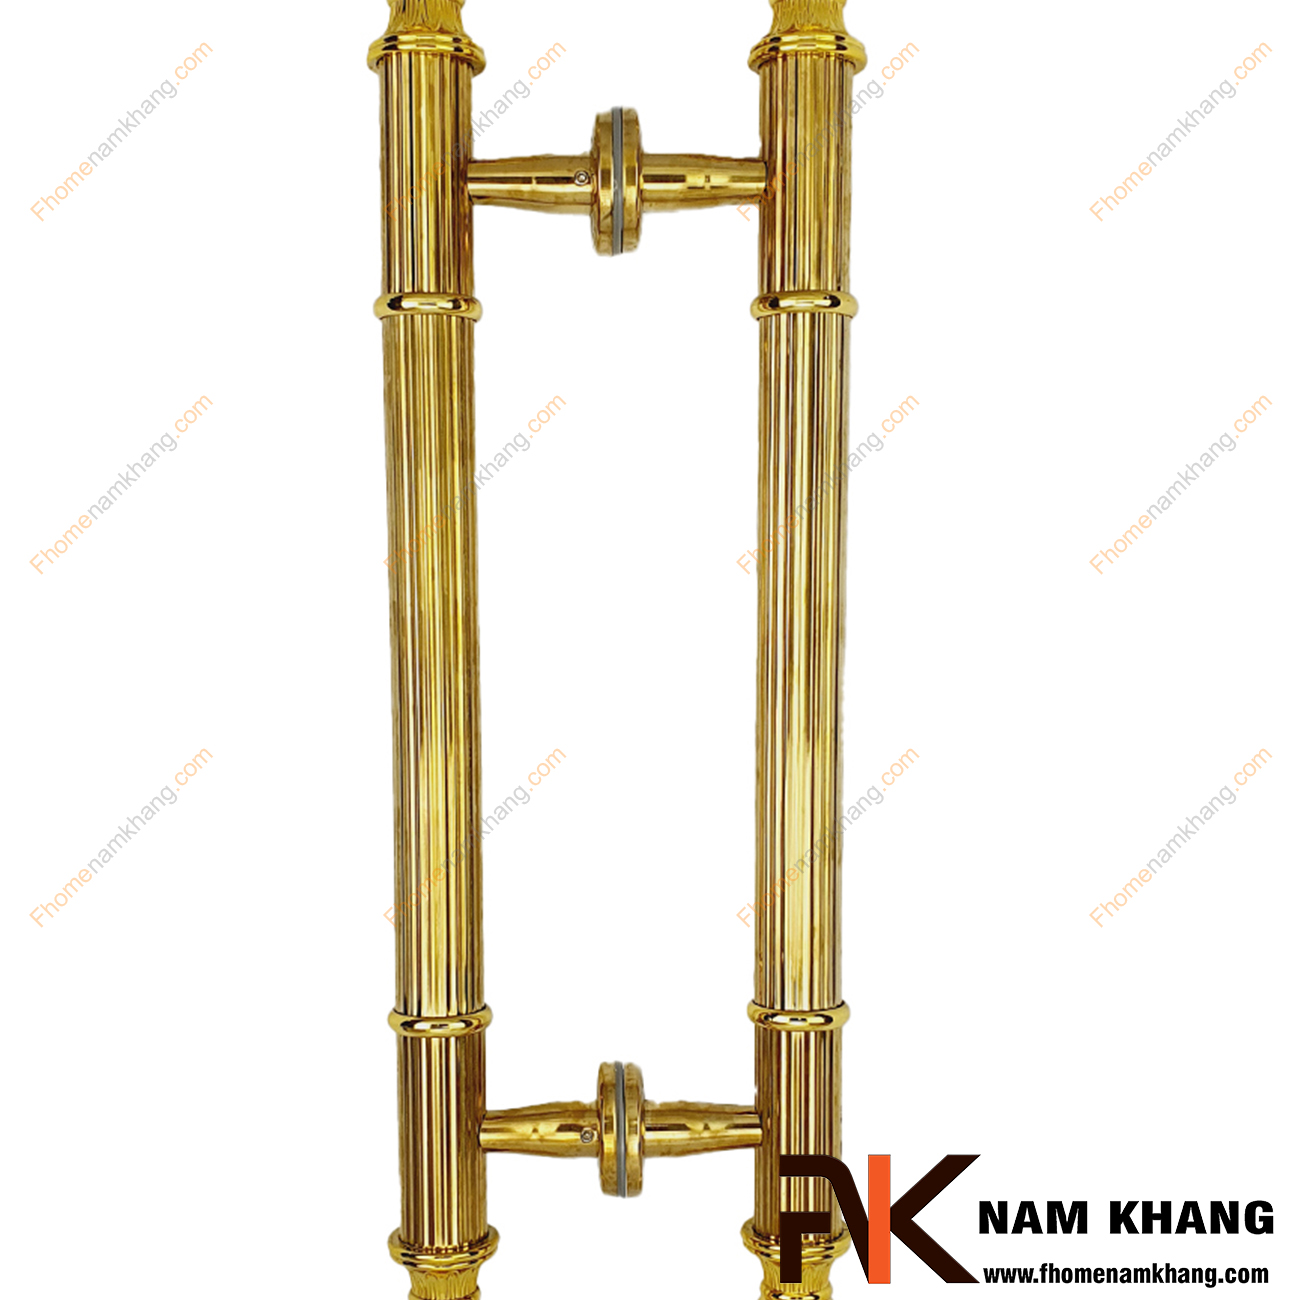 Tay nắm cửa chính bằng inox màu vàng gold NKC002-V là sản phẩm tay nắm tủ đồng tâm dùng cho nhiều loại cửa vời đầy đủ các chất liệu theo thiết kế nội thất.